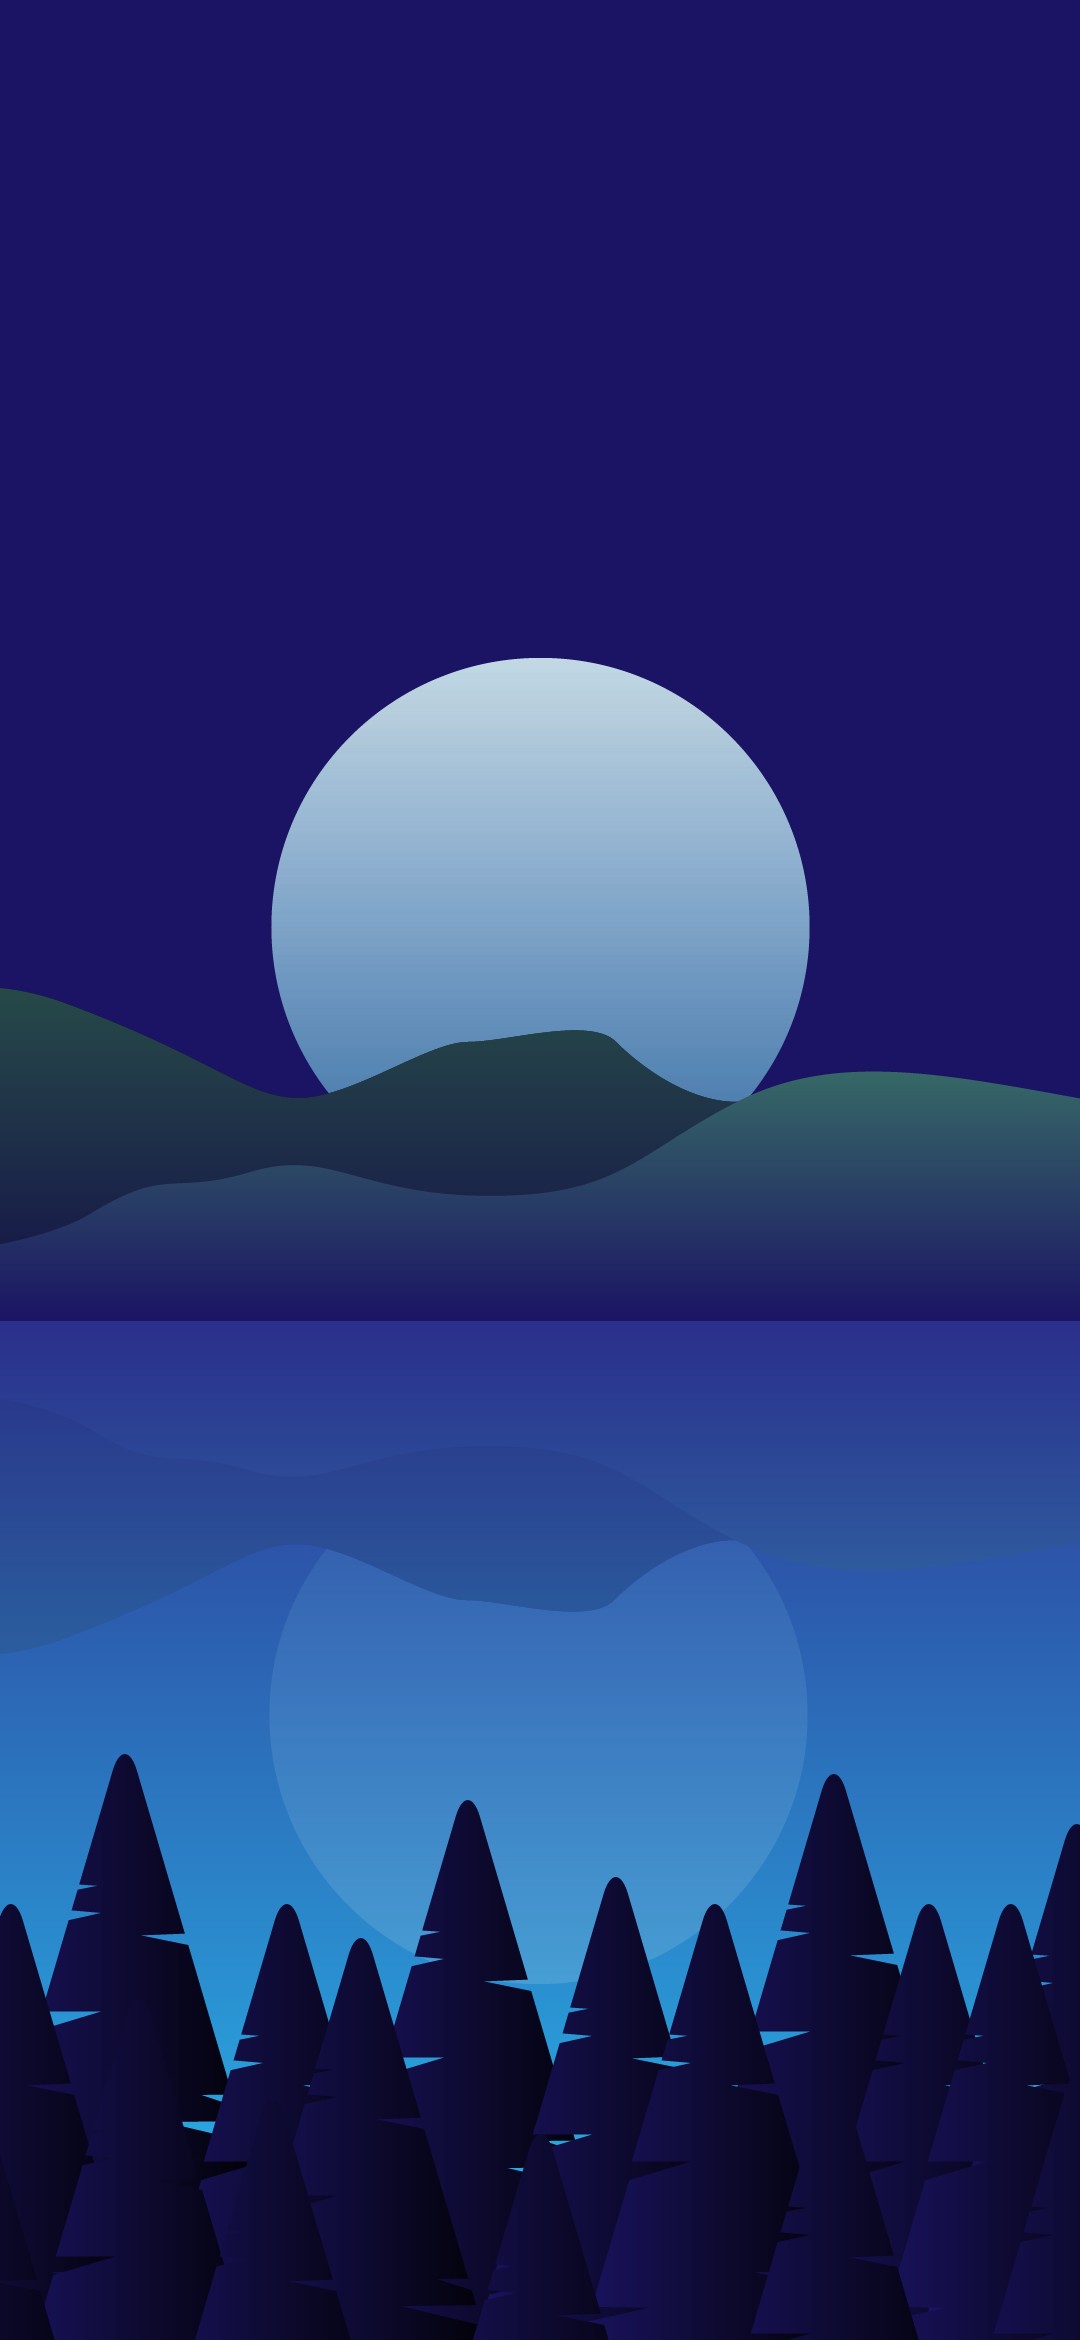 湖に映る満月と星 イラスト Google Pixel 5 Android スマホ壁紙 待ち受け スマラン